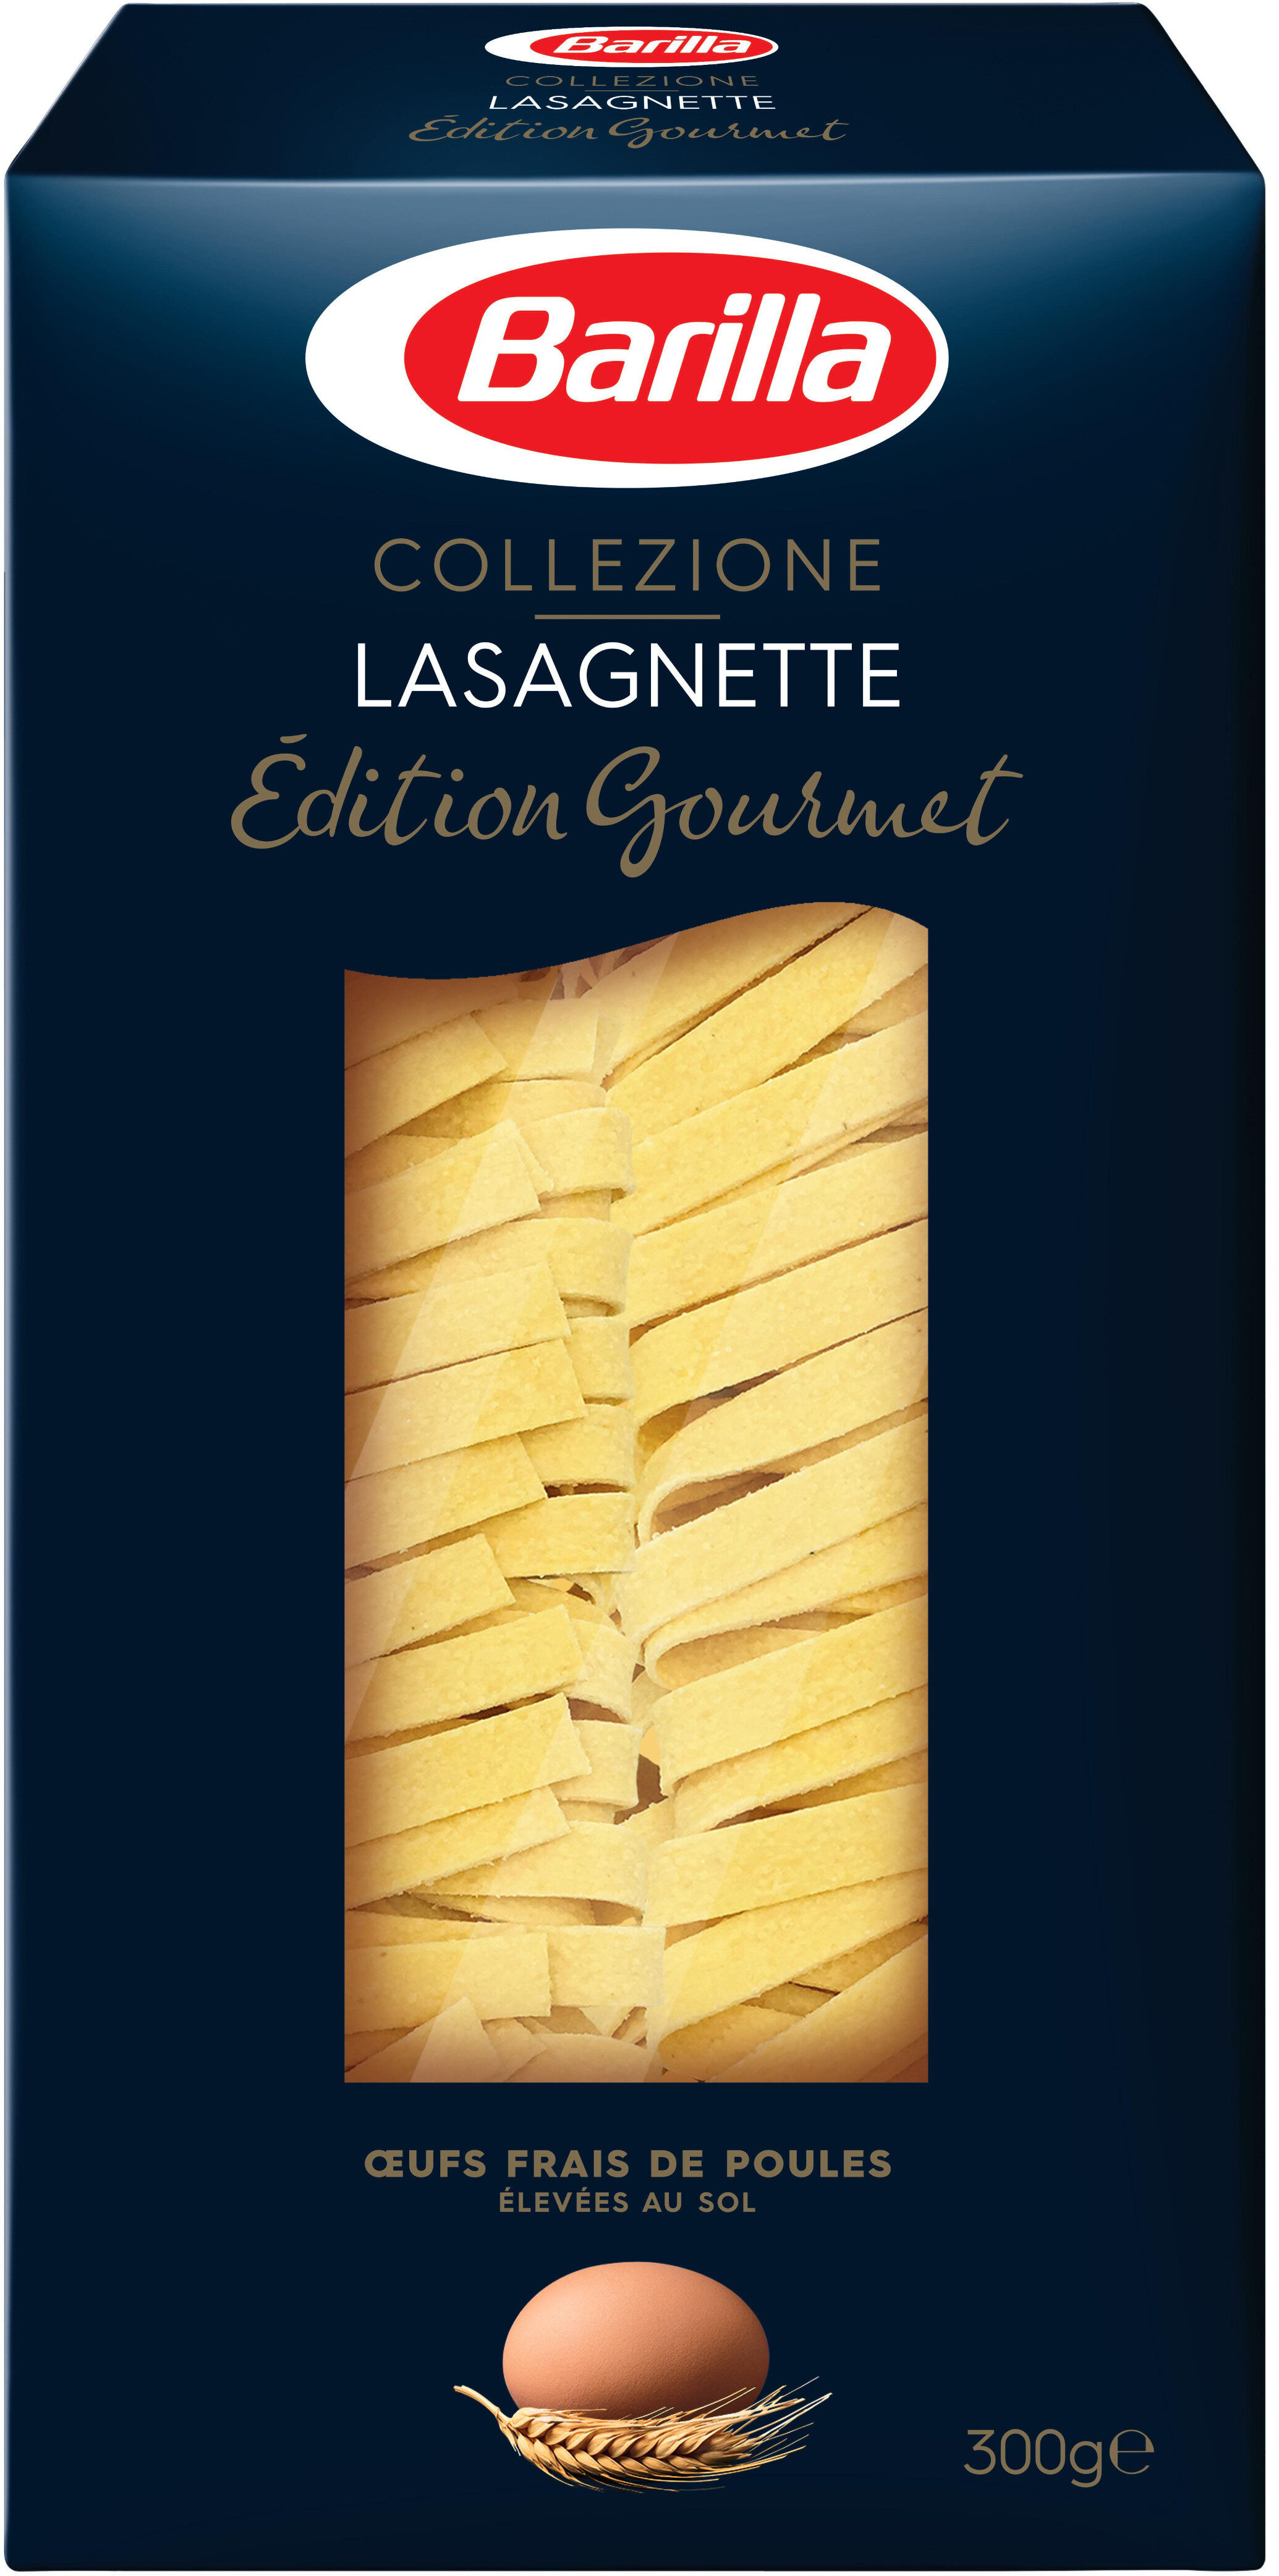 Pâtes Lasagnette - Product - fr